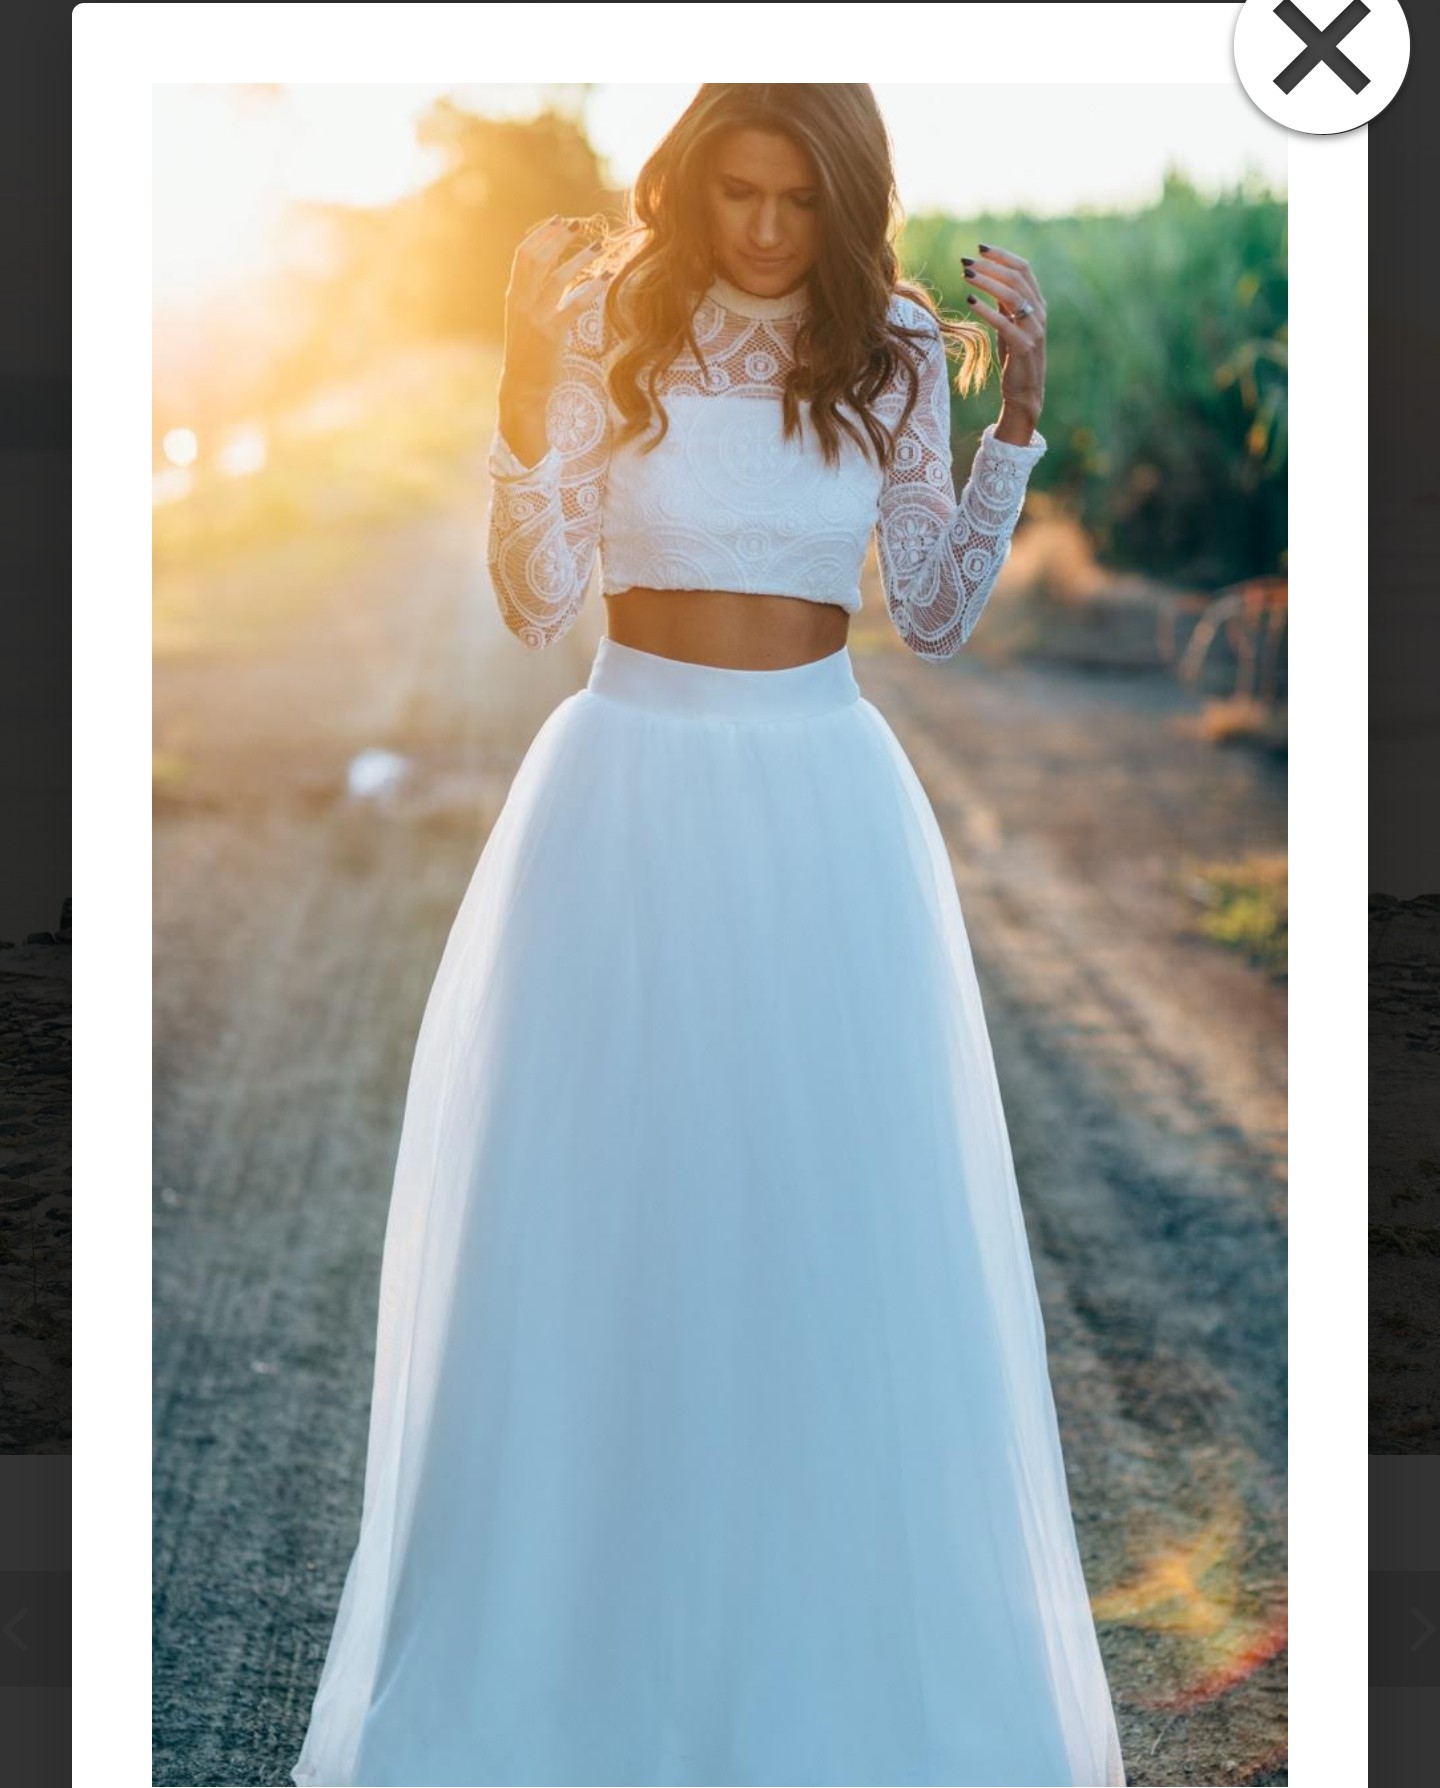 Свадебный костюм юбка. Раздельное платье. Раздельное свадебное платье. Свадебное платье топ и юбка. Белый топ и юбка.